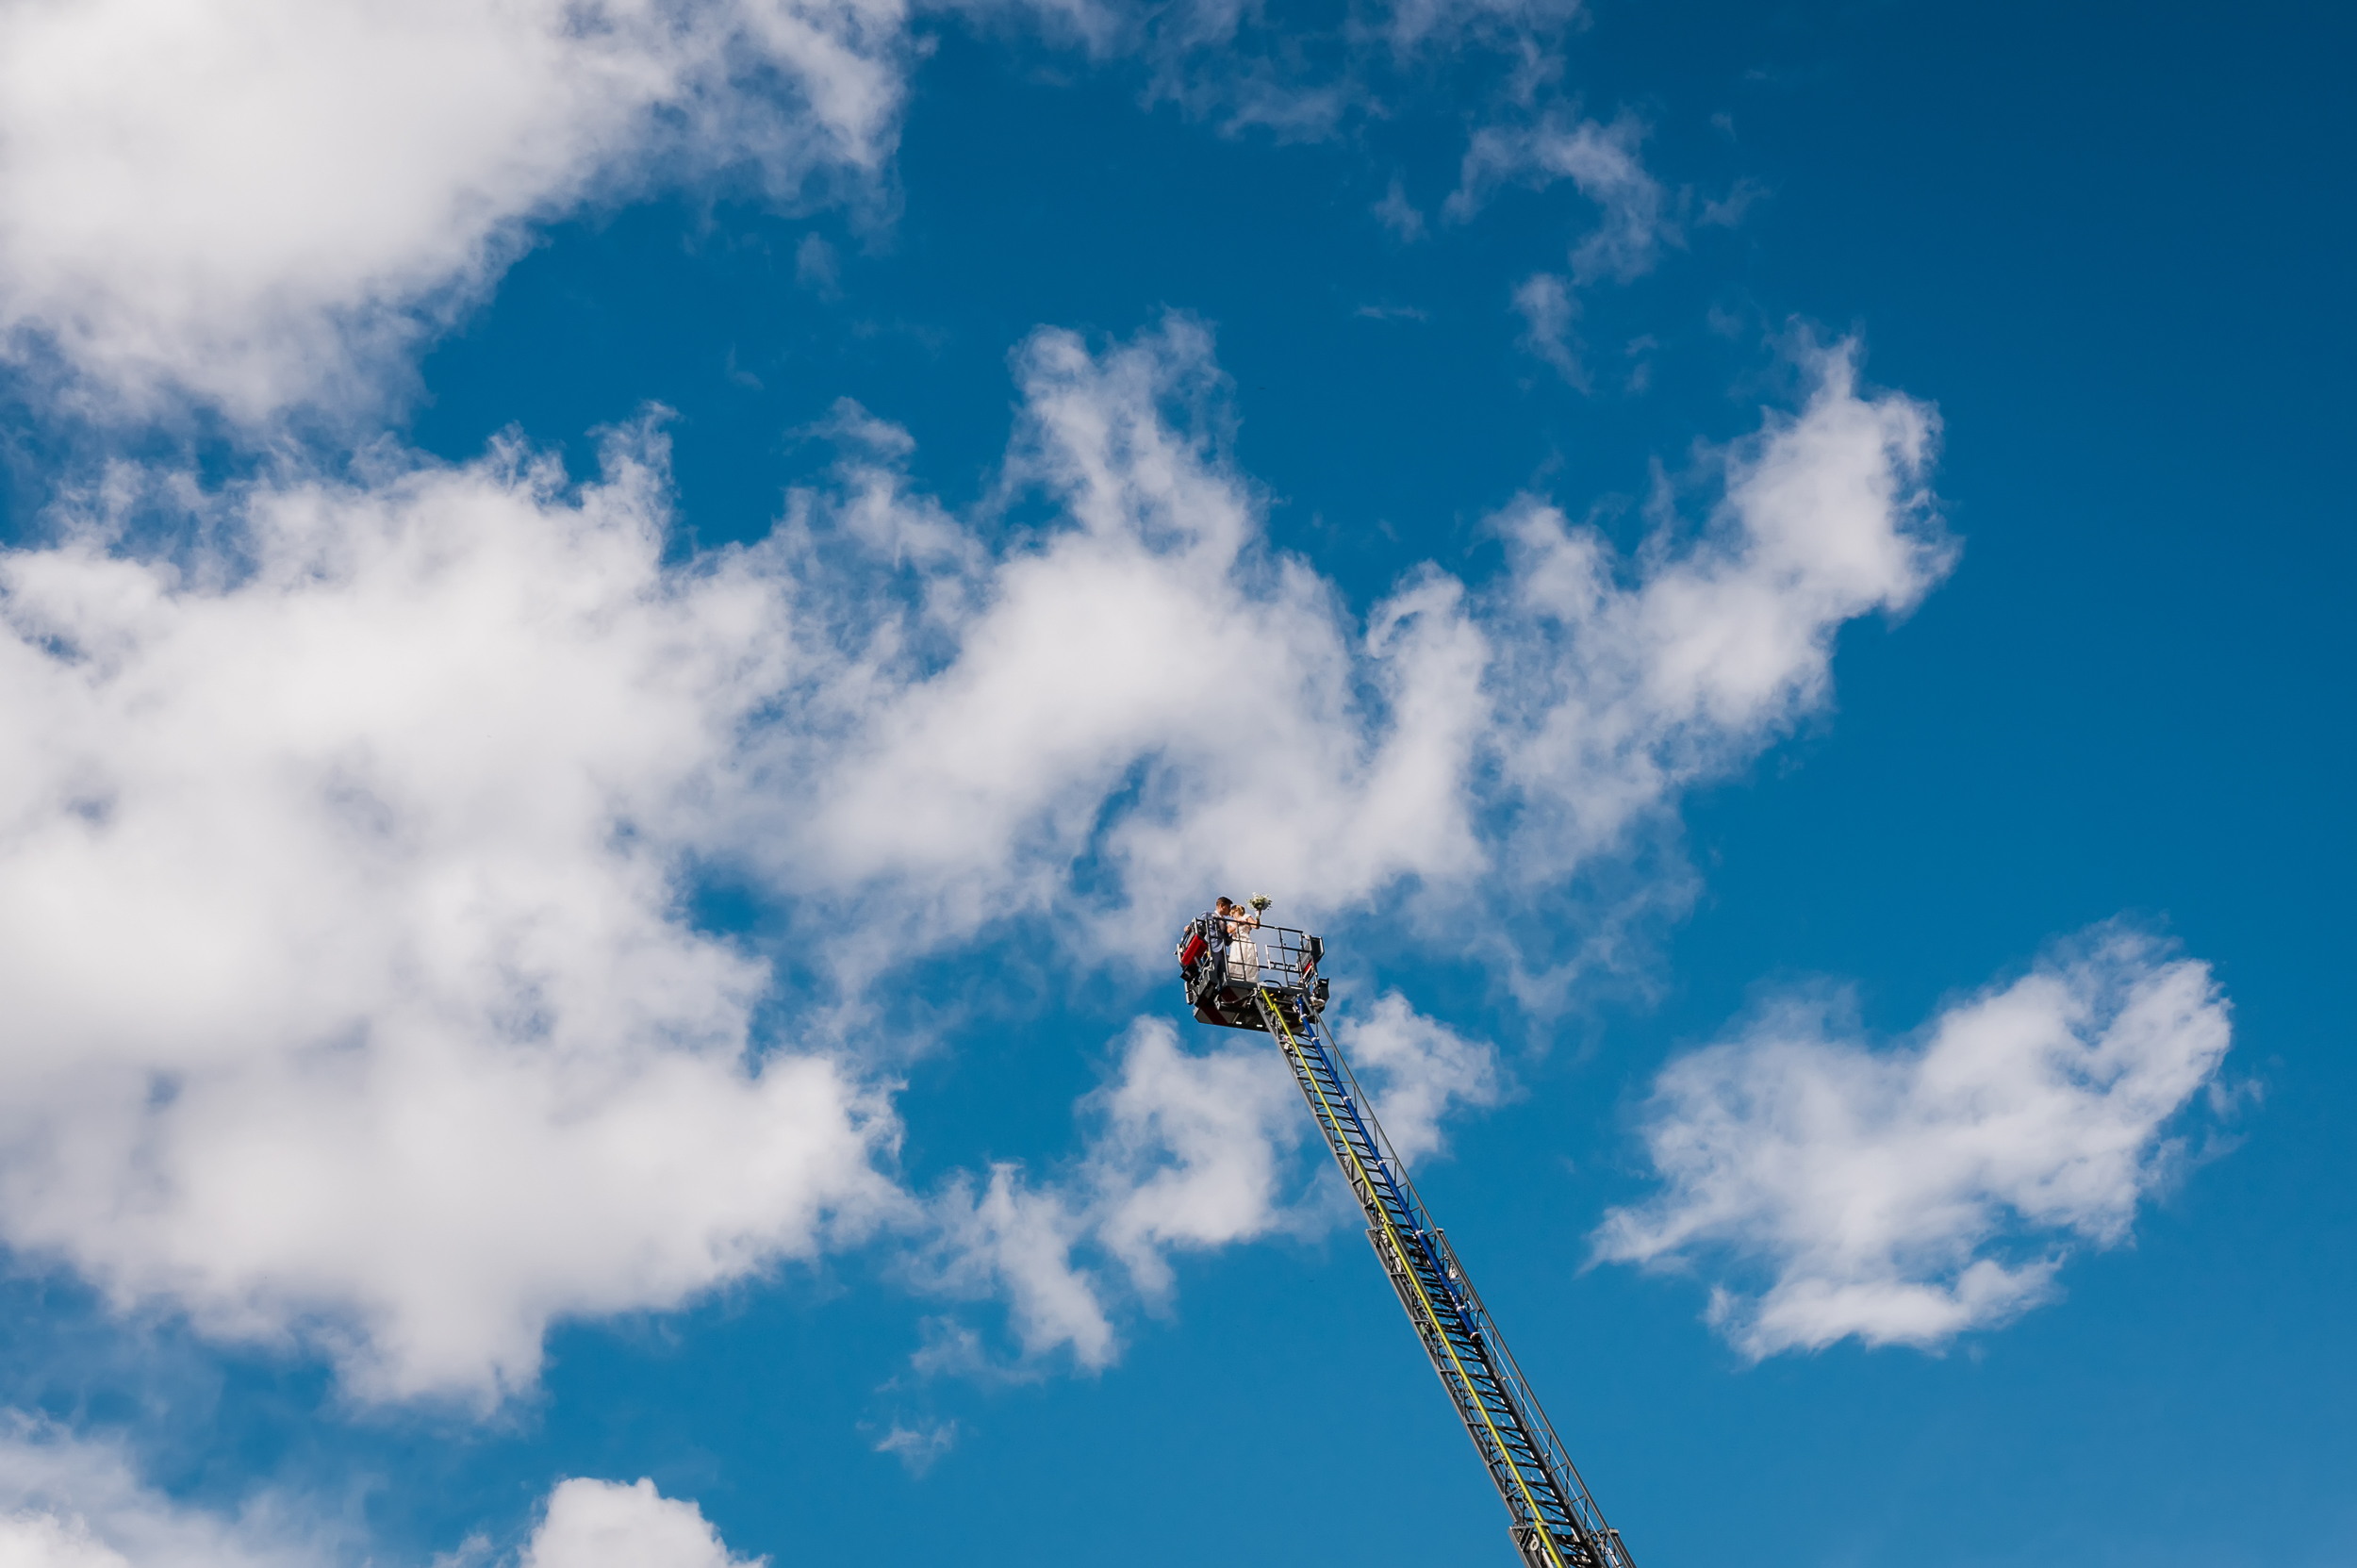 Ein Brautpaar wird auf einem Feuerwehrauto in die Luft gehoben und küsst sich inmitten eines wunderschönen blauen Himmels.